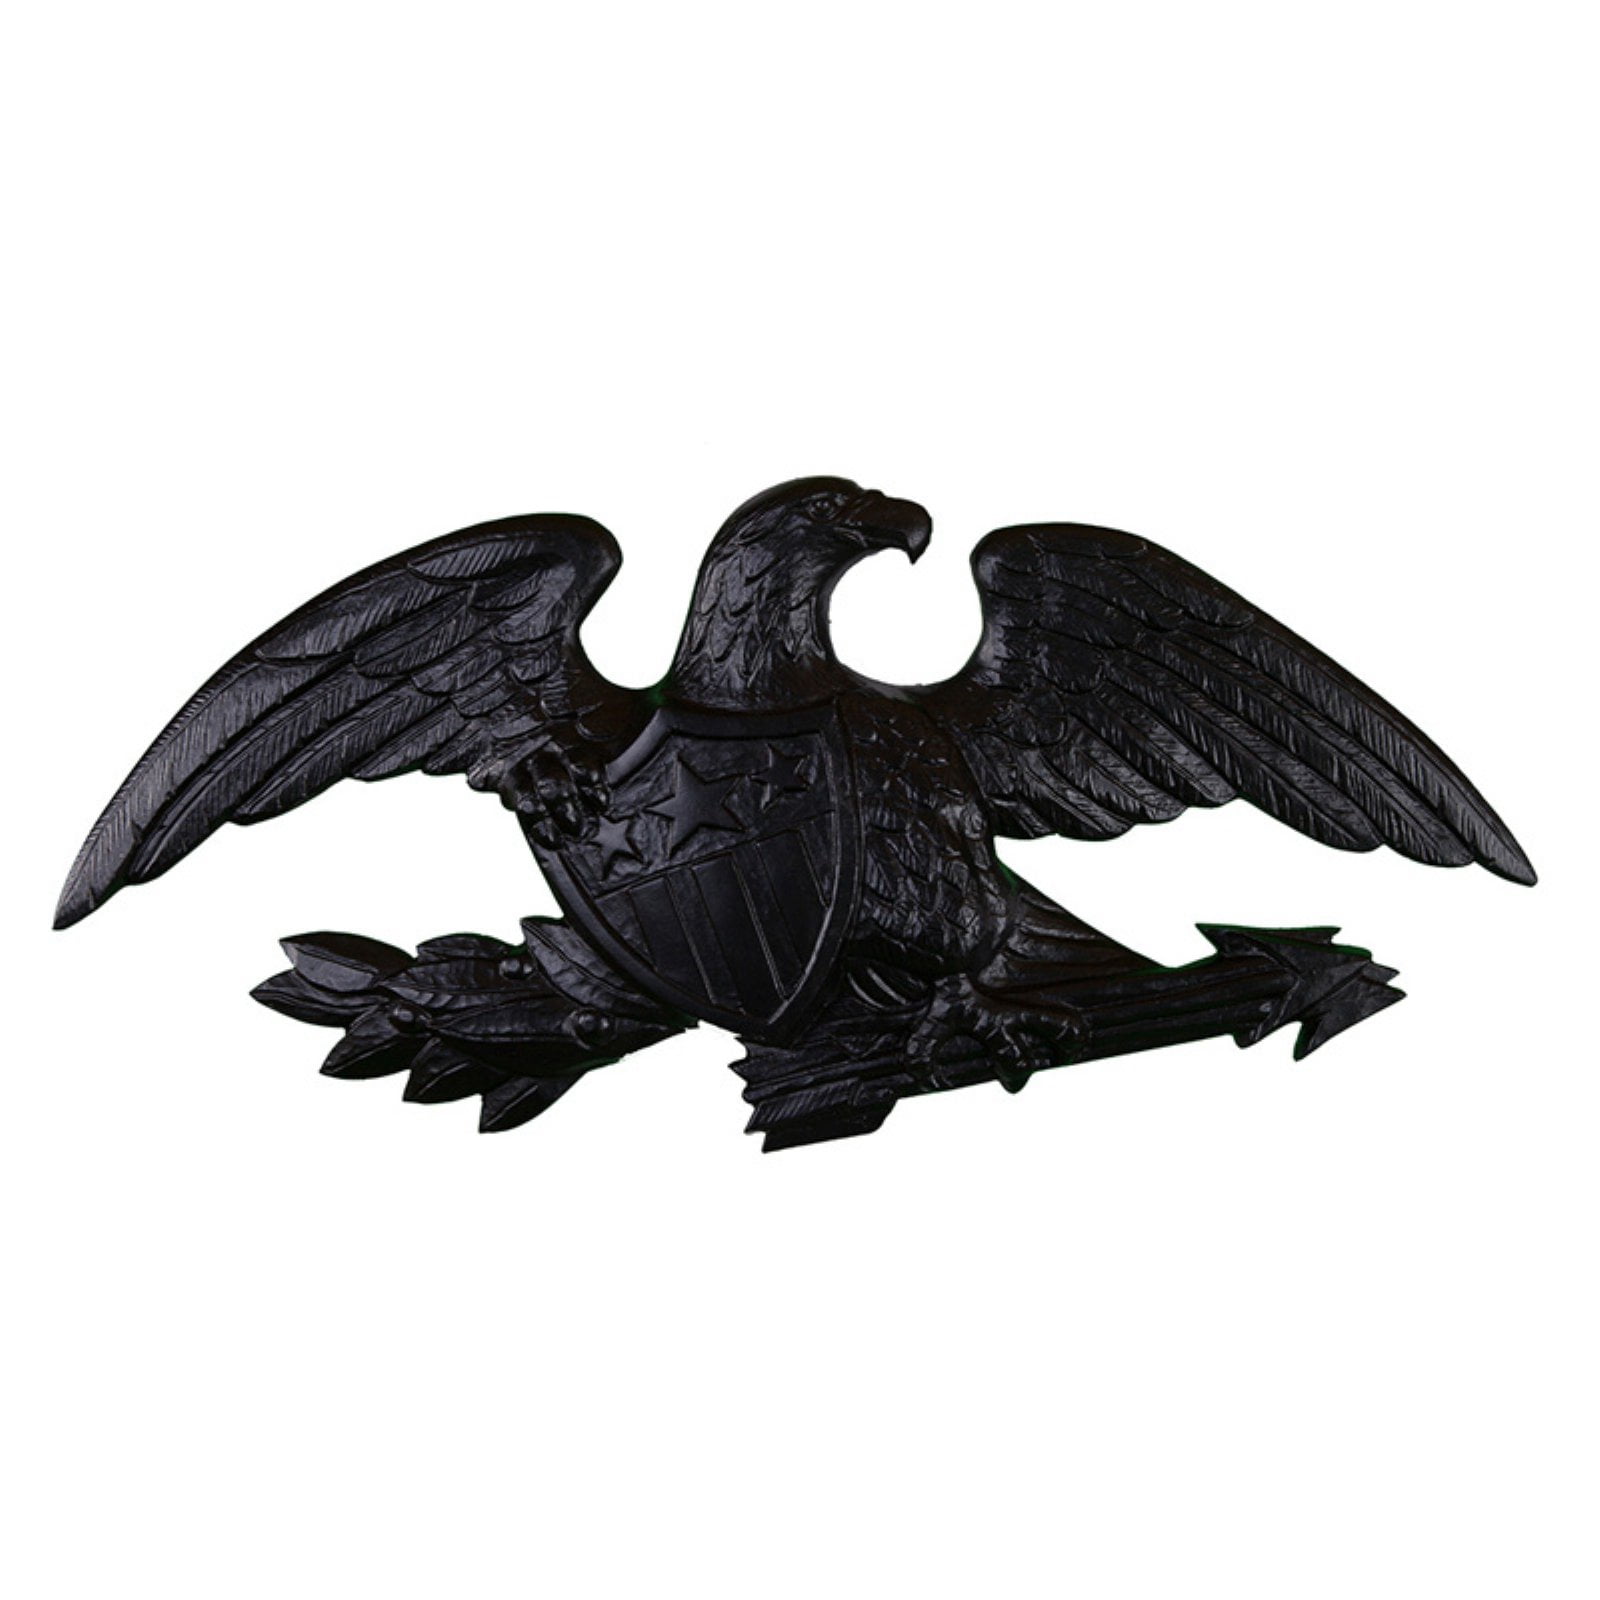 Starlancer чёрные Орлы. Чёрный орёл наподающий с росправленными крыльями.